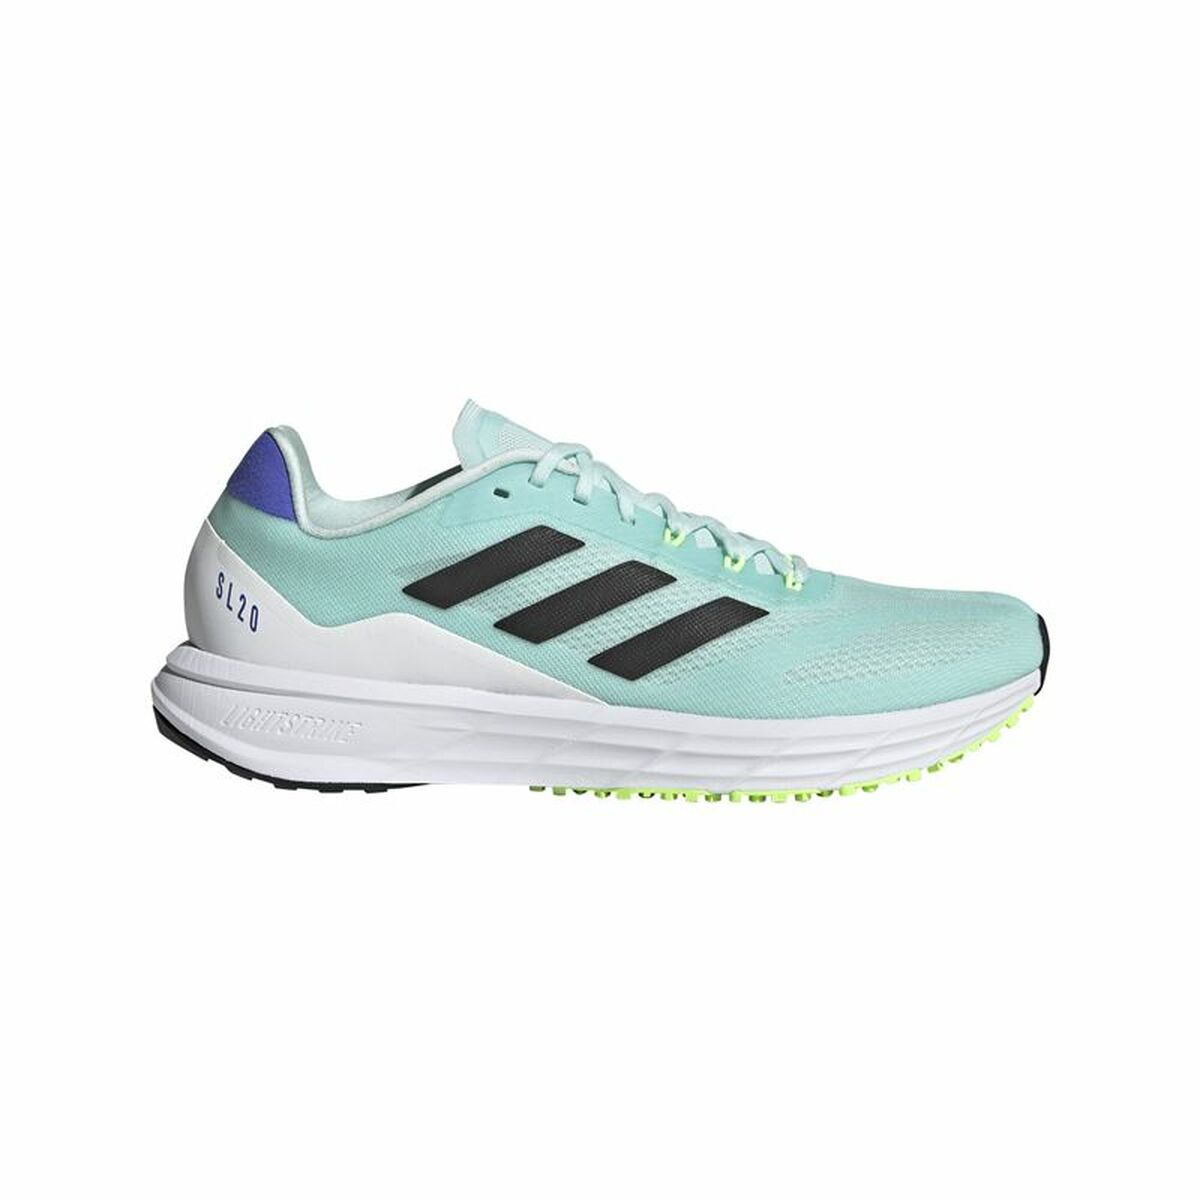 Scarpe da Running per Adulti Adidas SL20.2 Donna Ciano